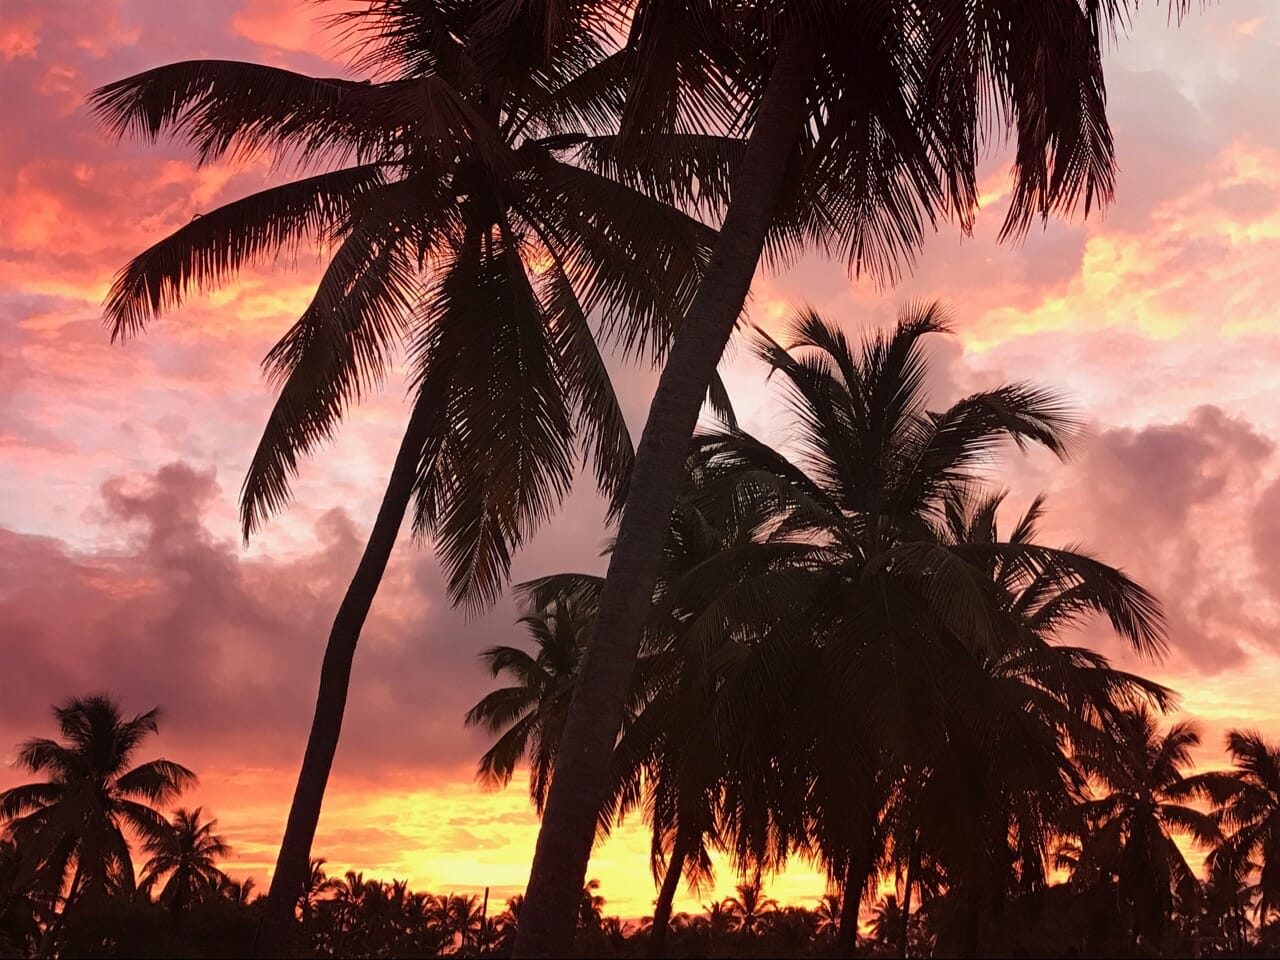 закат в доминикане - Punta-cana